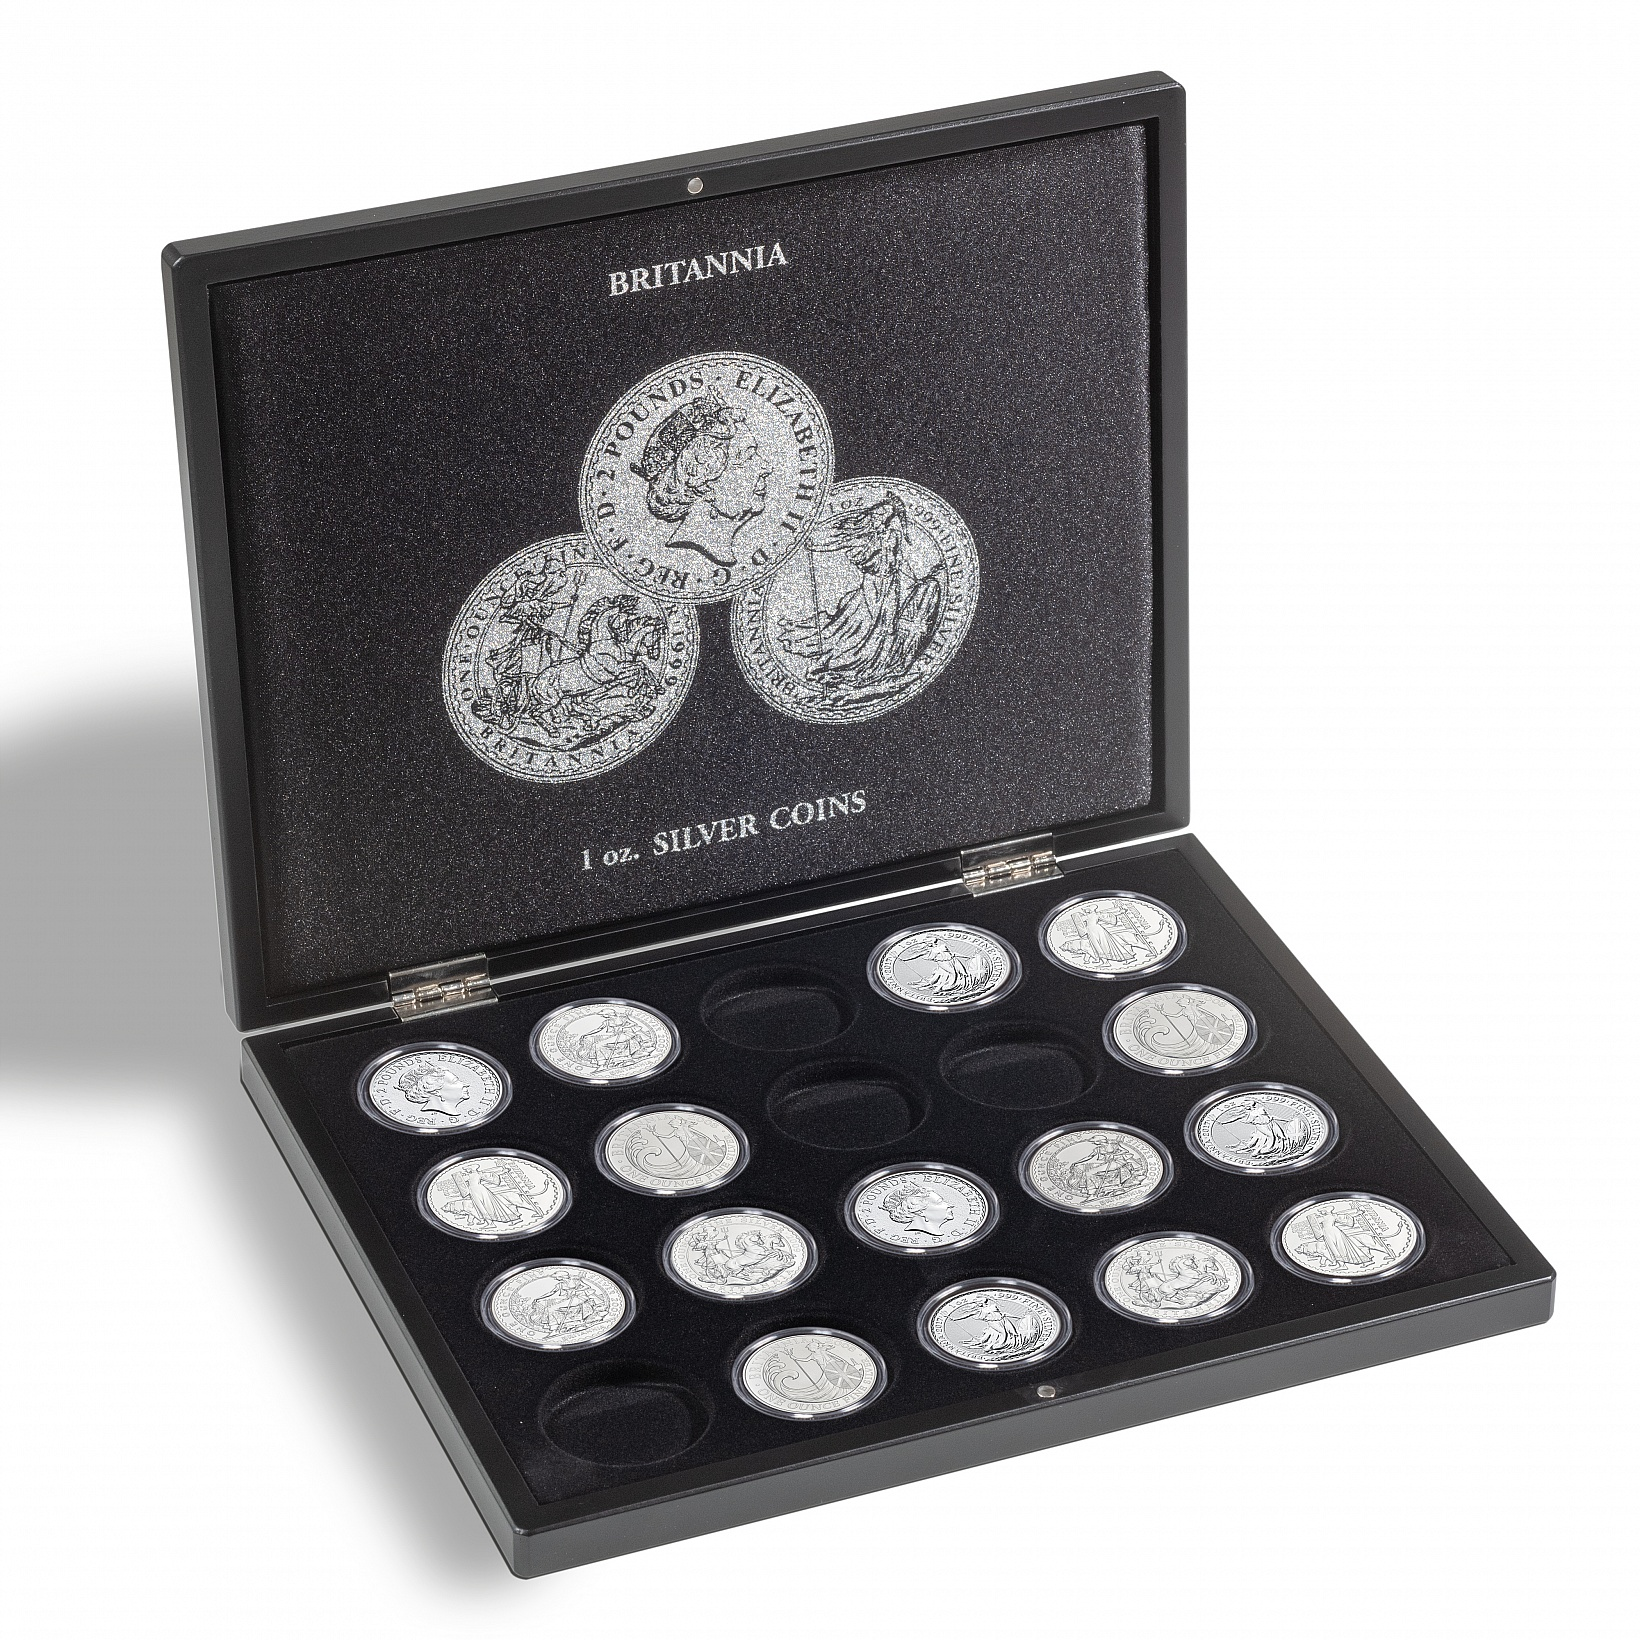 presentation-case-for-20-britannia-silver-coins-1-oz-in-capsules-1